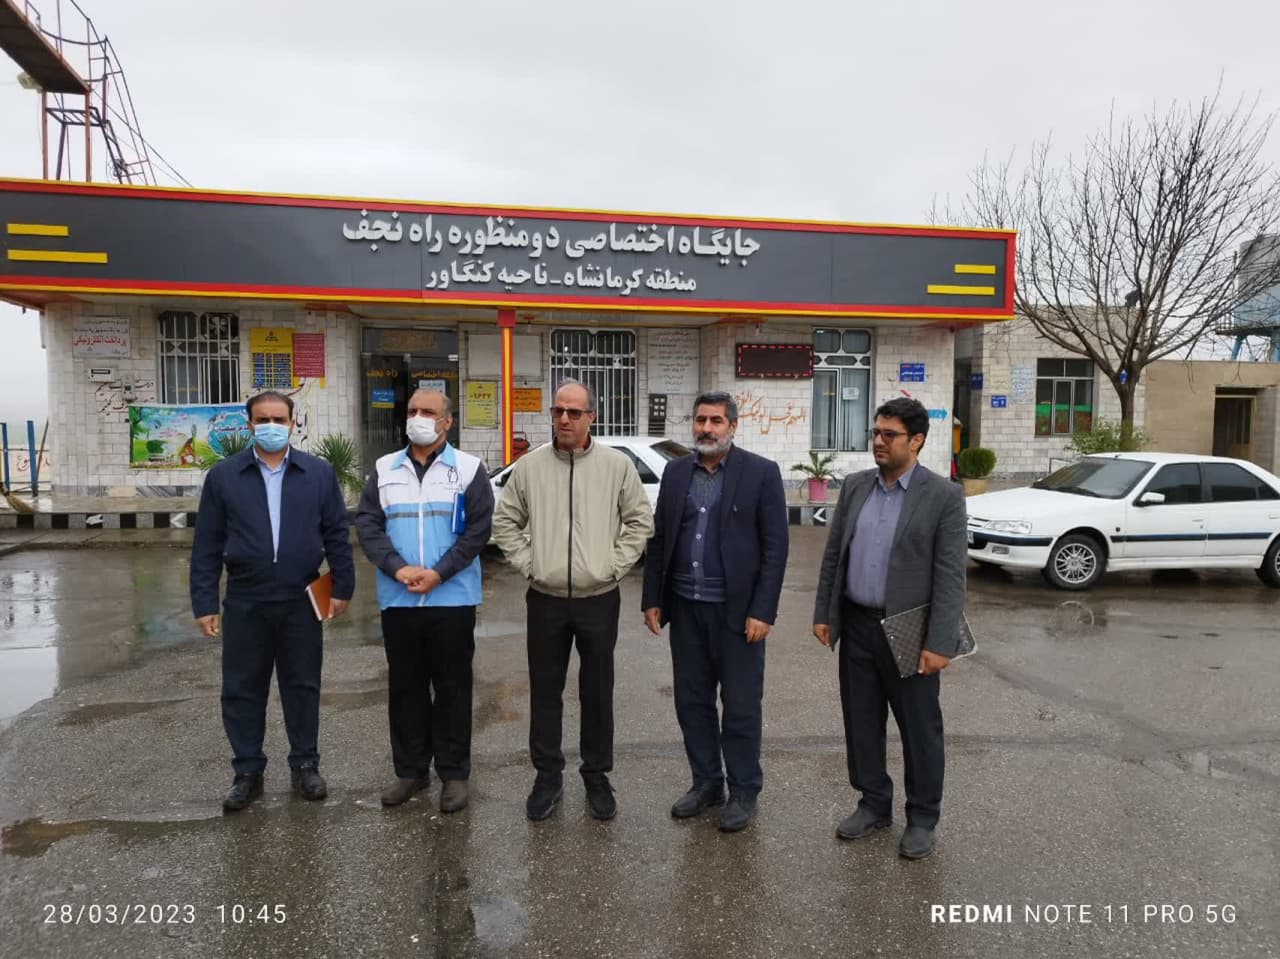 بازدید گروه انظارت و ارزیابی از مسیر راههای مواصلاتی شرق استان کرمانشاه-1